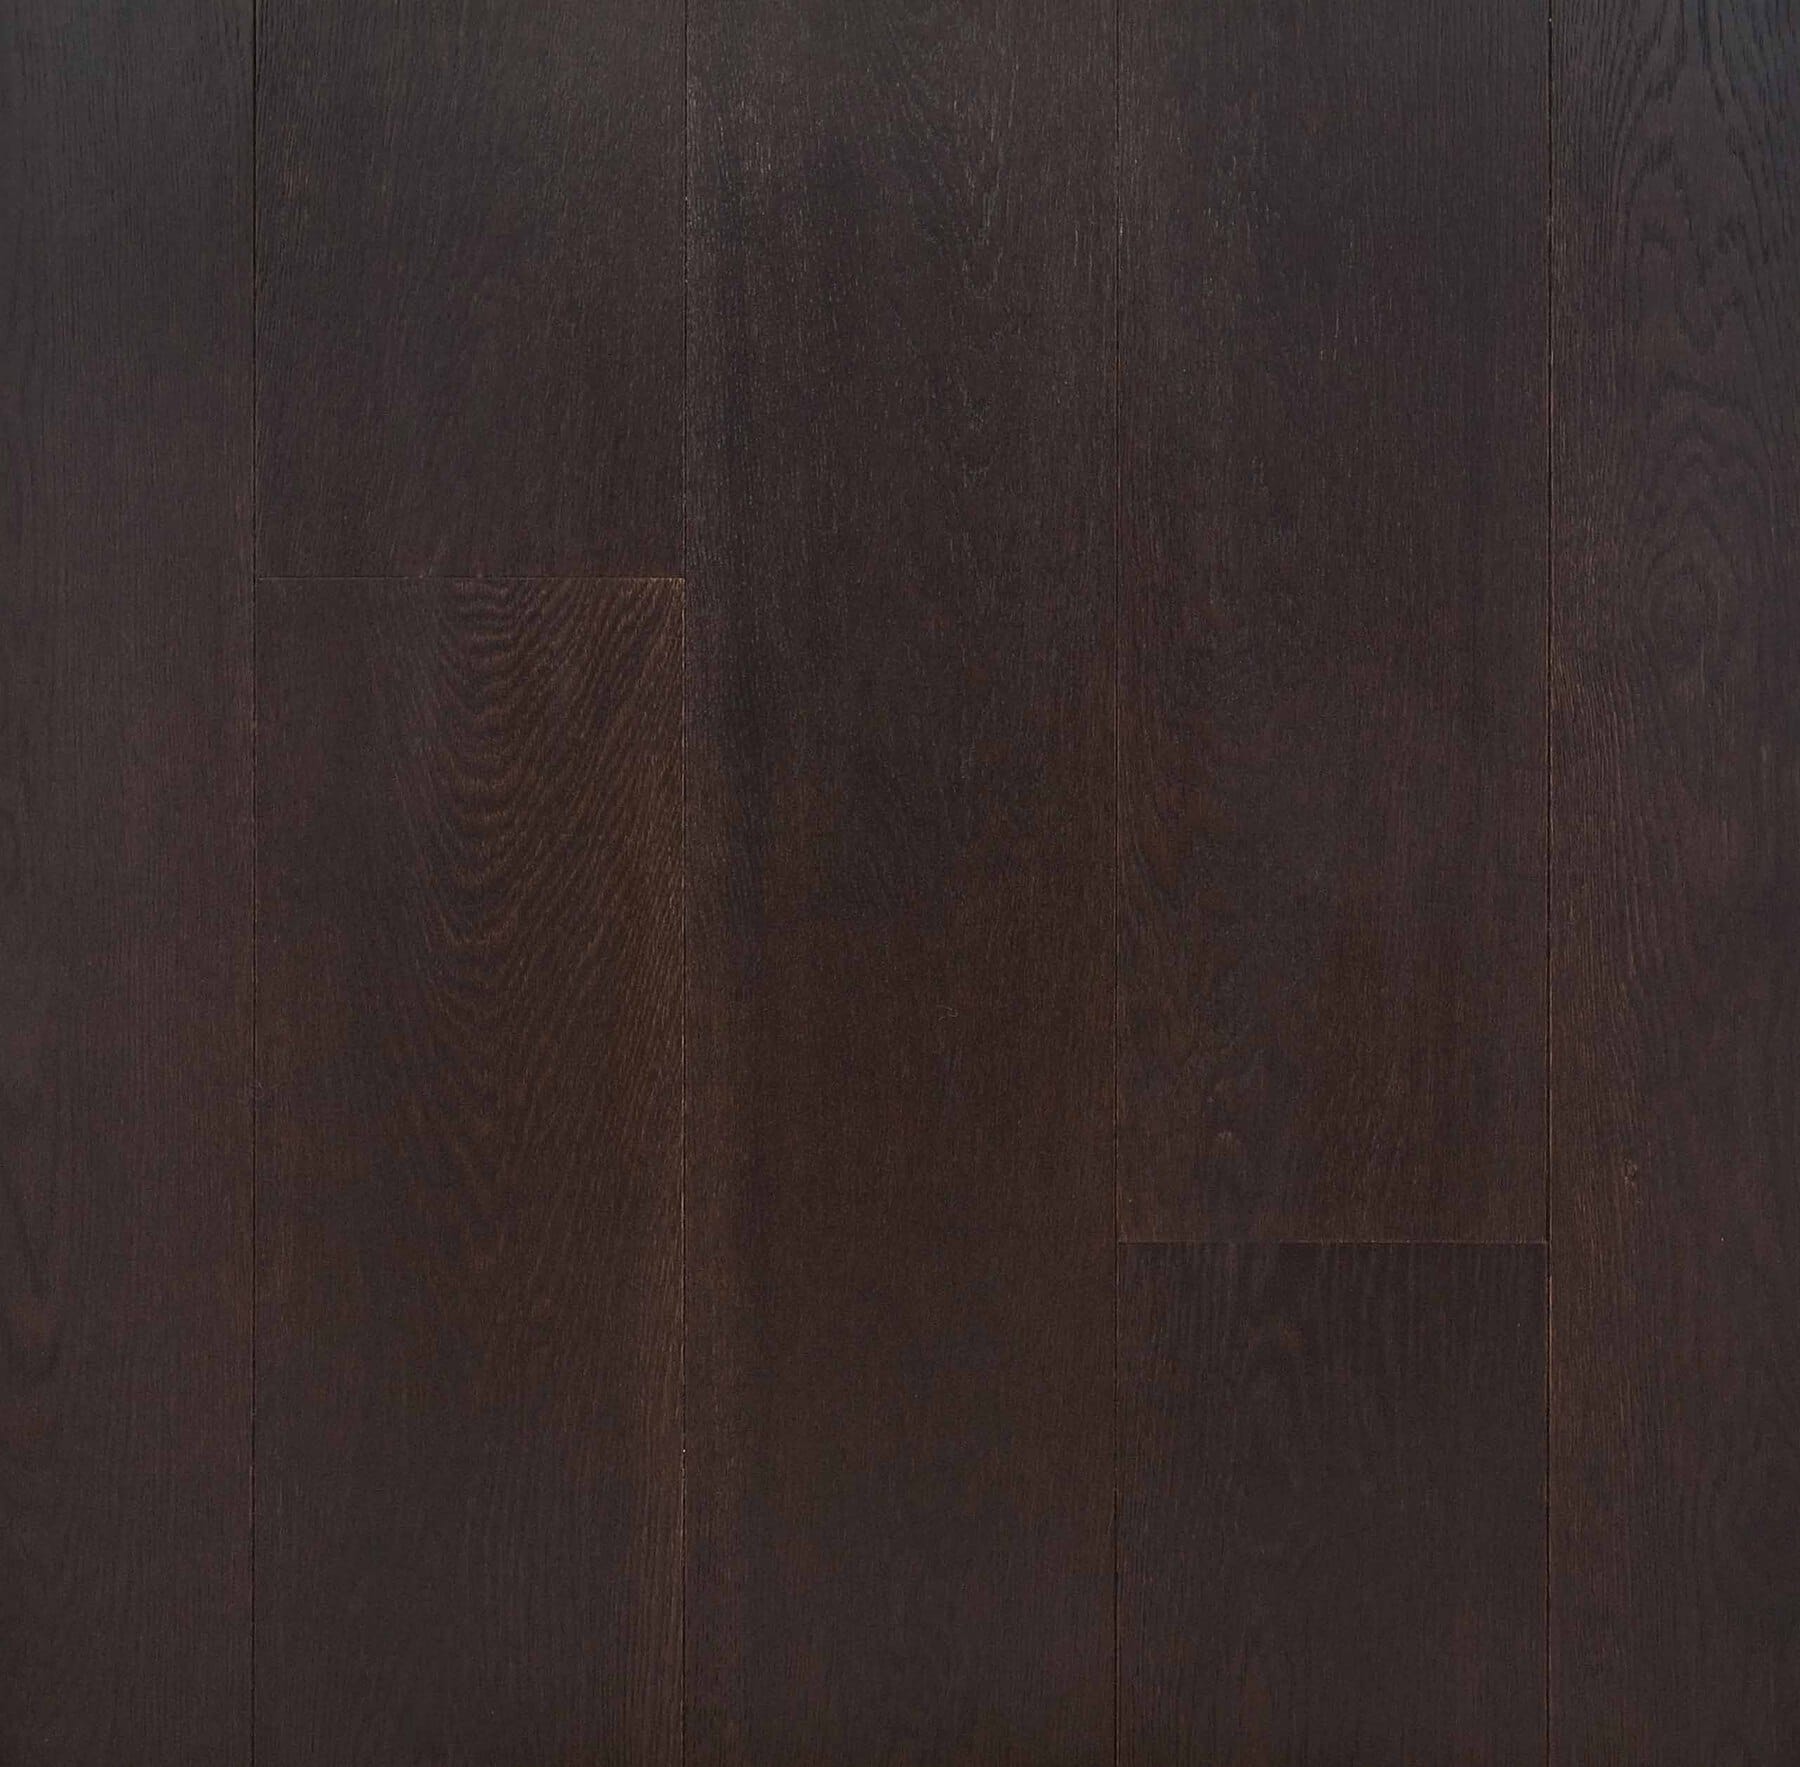 Engineered oak wood flooring named Palermo Black